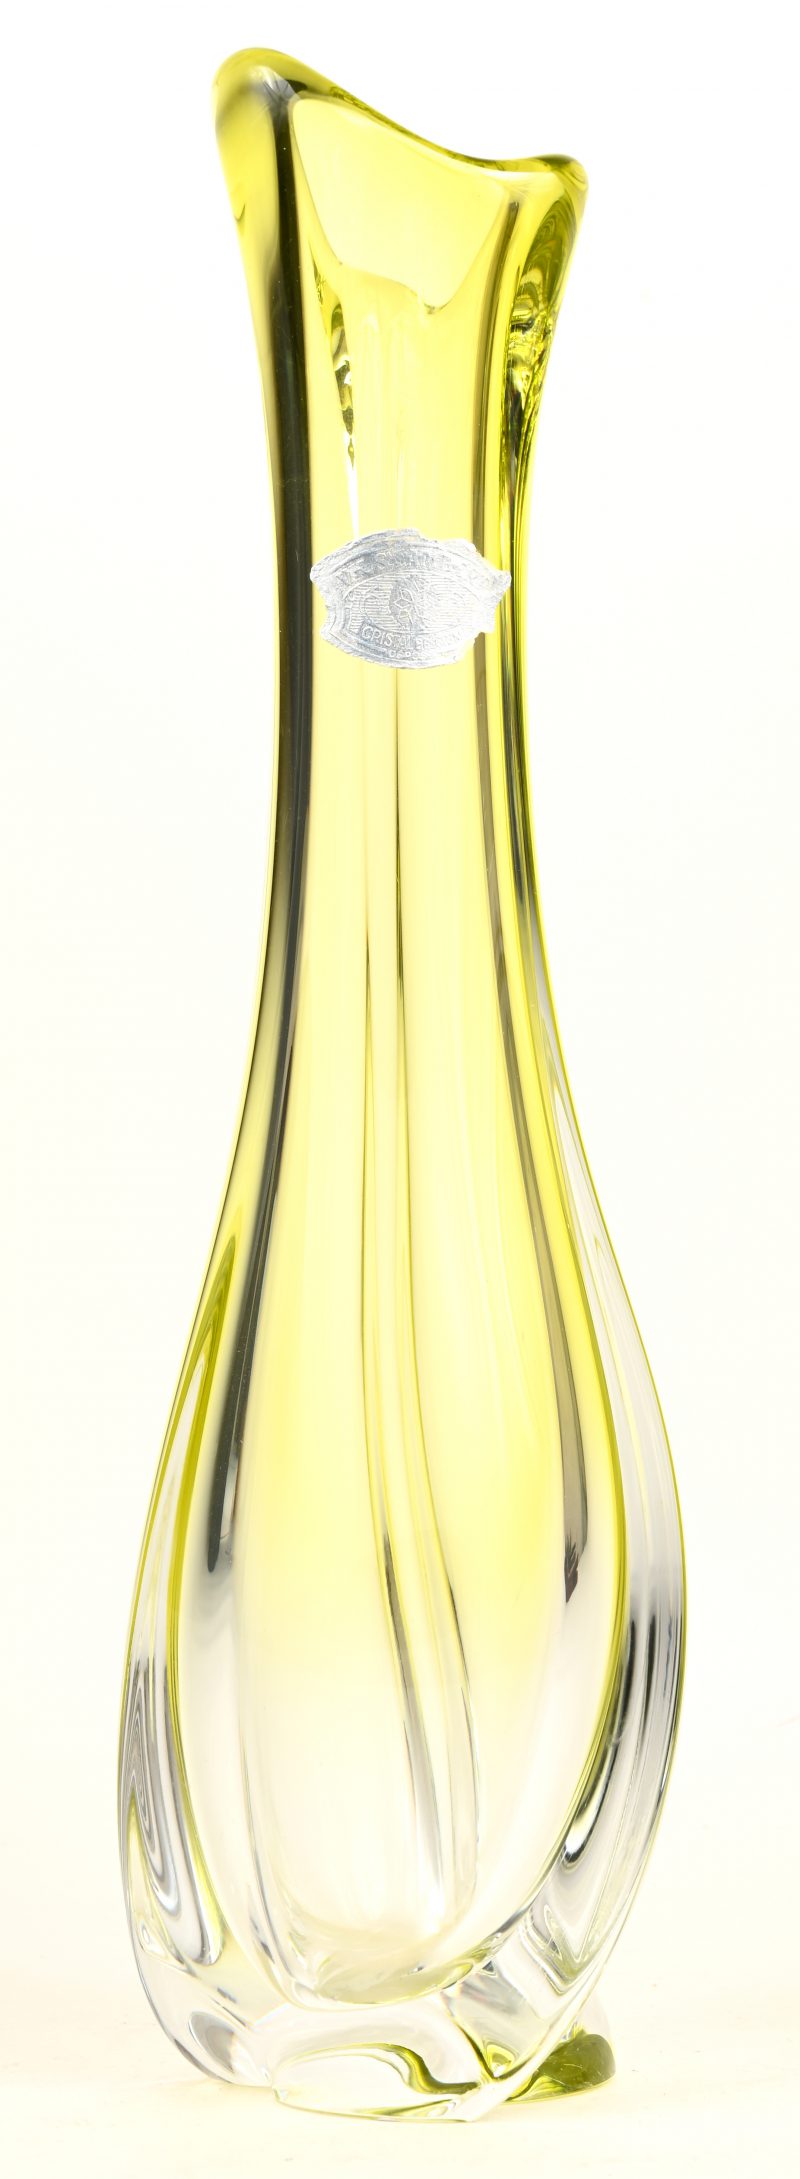 Een moderne vaas van kristal, deels geel gekleurd in de massa. Gemerkt met label.